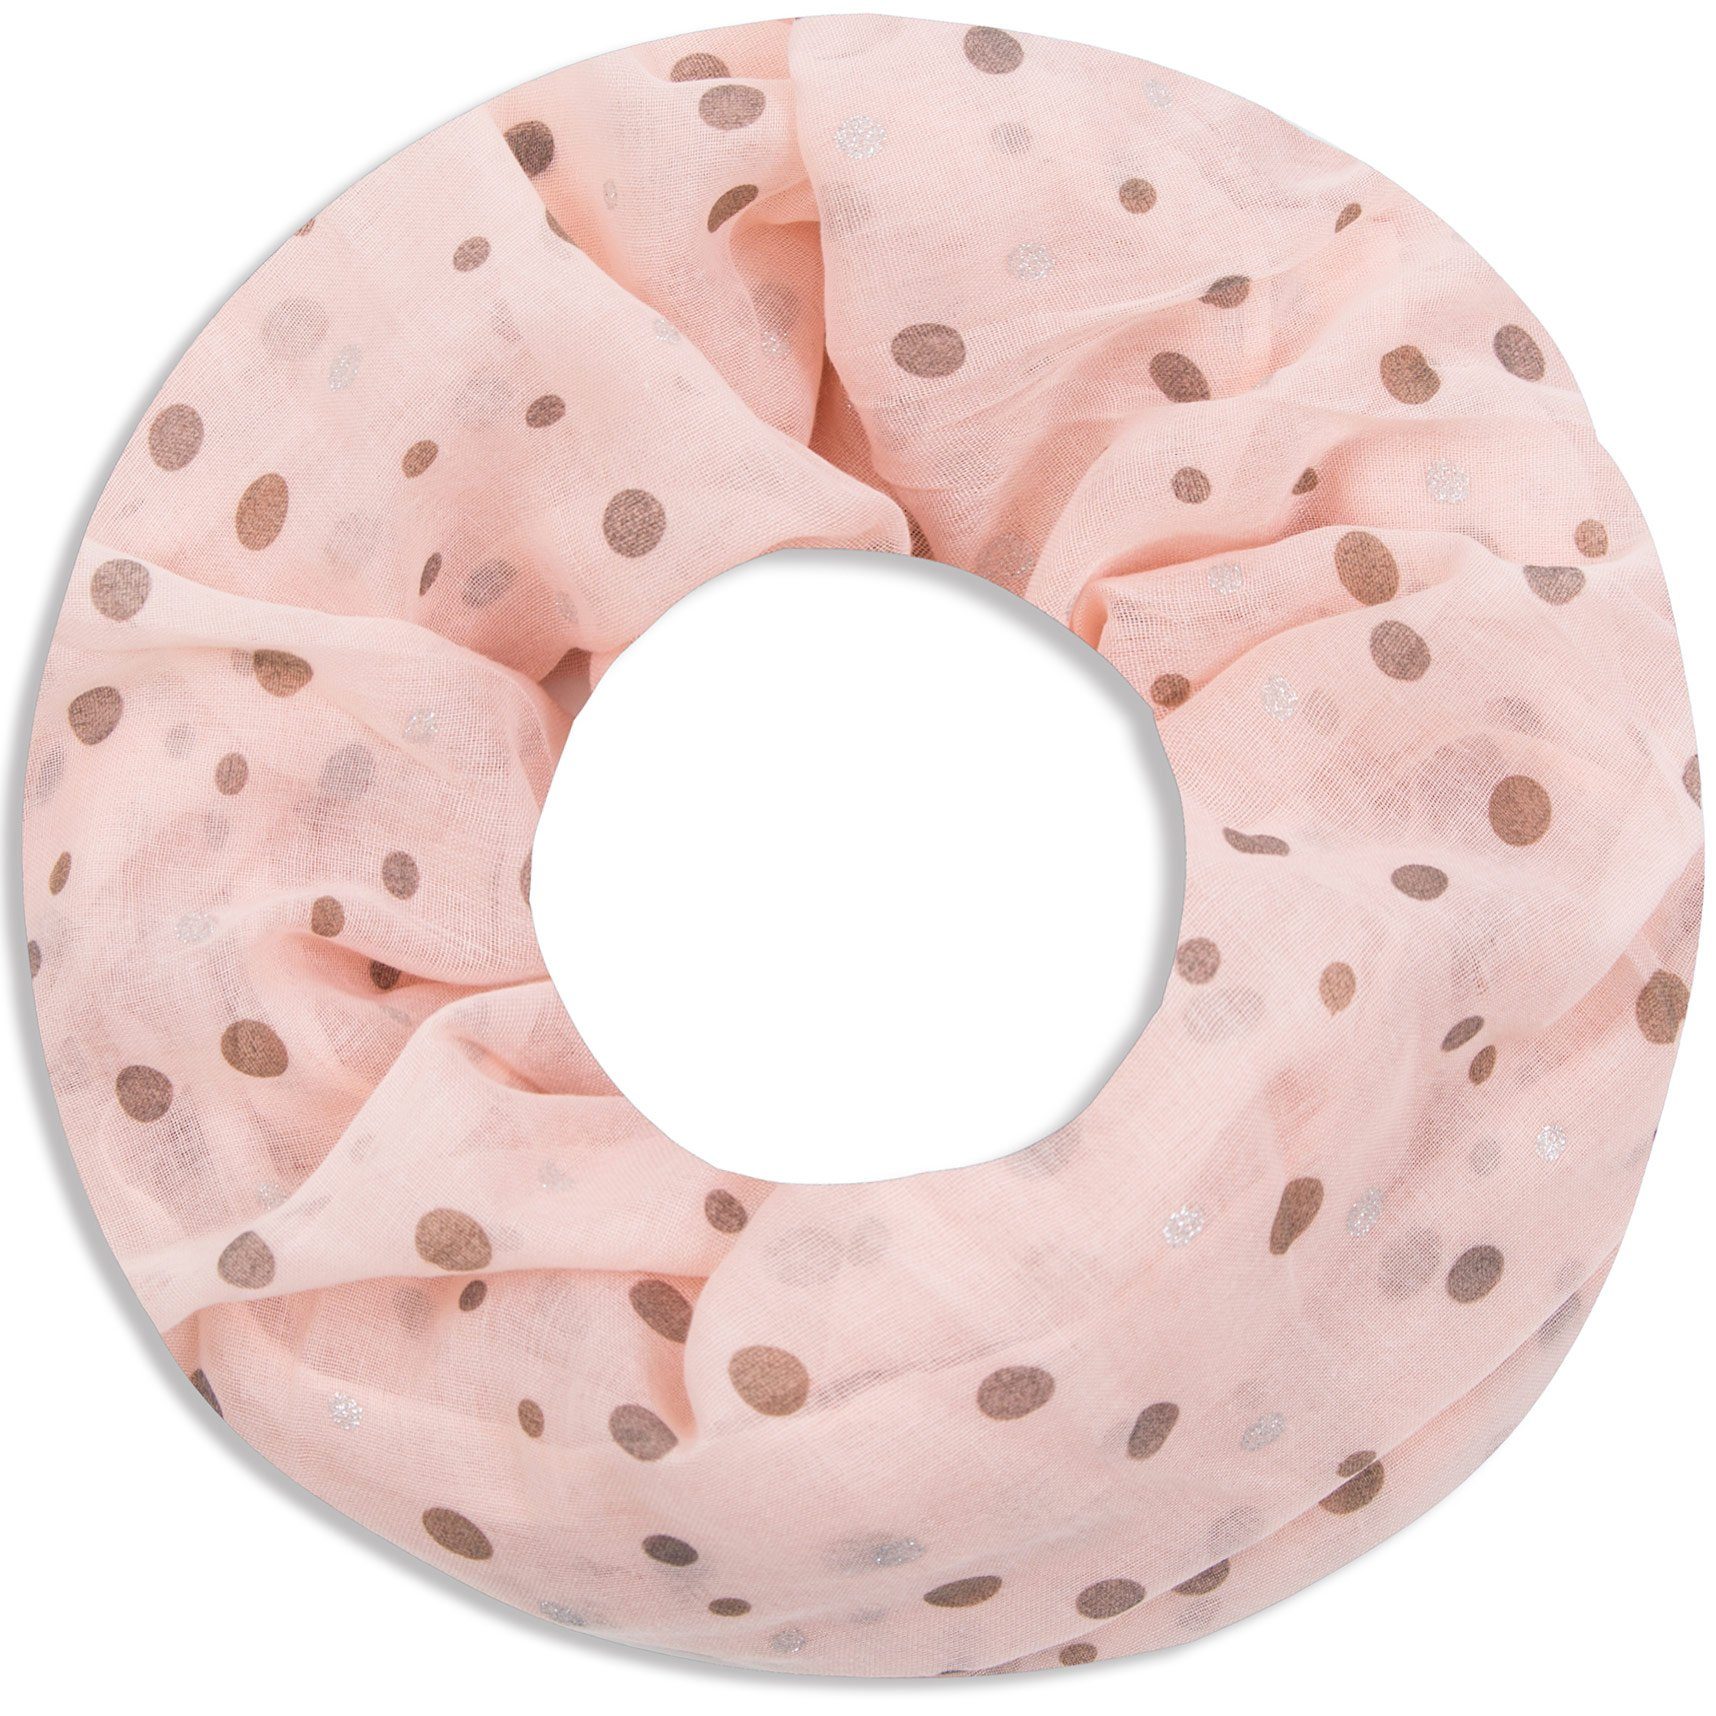 Faera Loop, Damen Schal luftig und weich mit erfrischendem Punkt-Muster Loopschal Rundschal rose